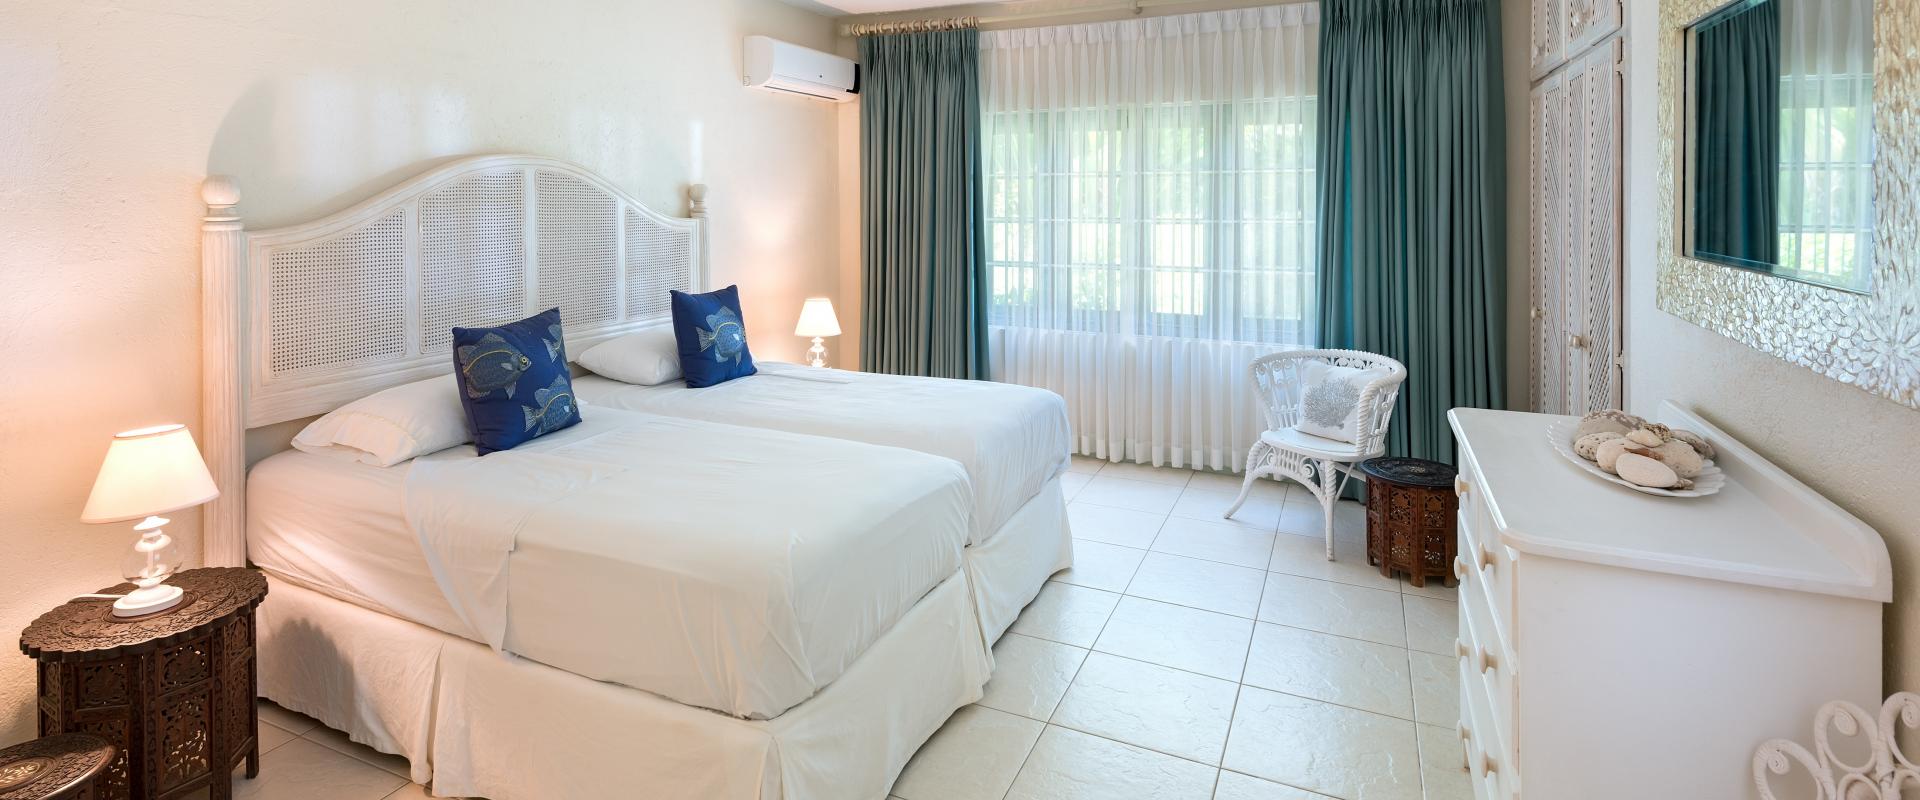 Anchorage Sandy Lane Barbados Holiday Rental Bedroom 3